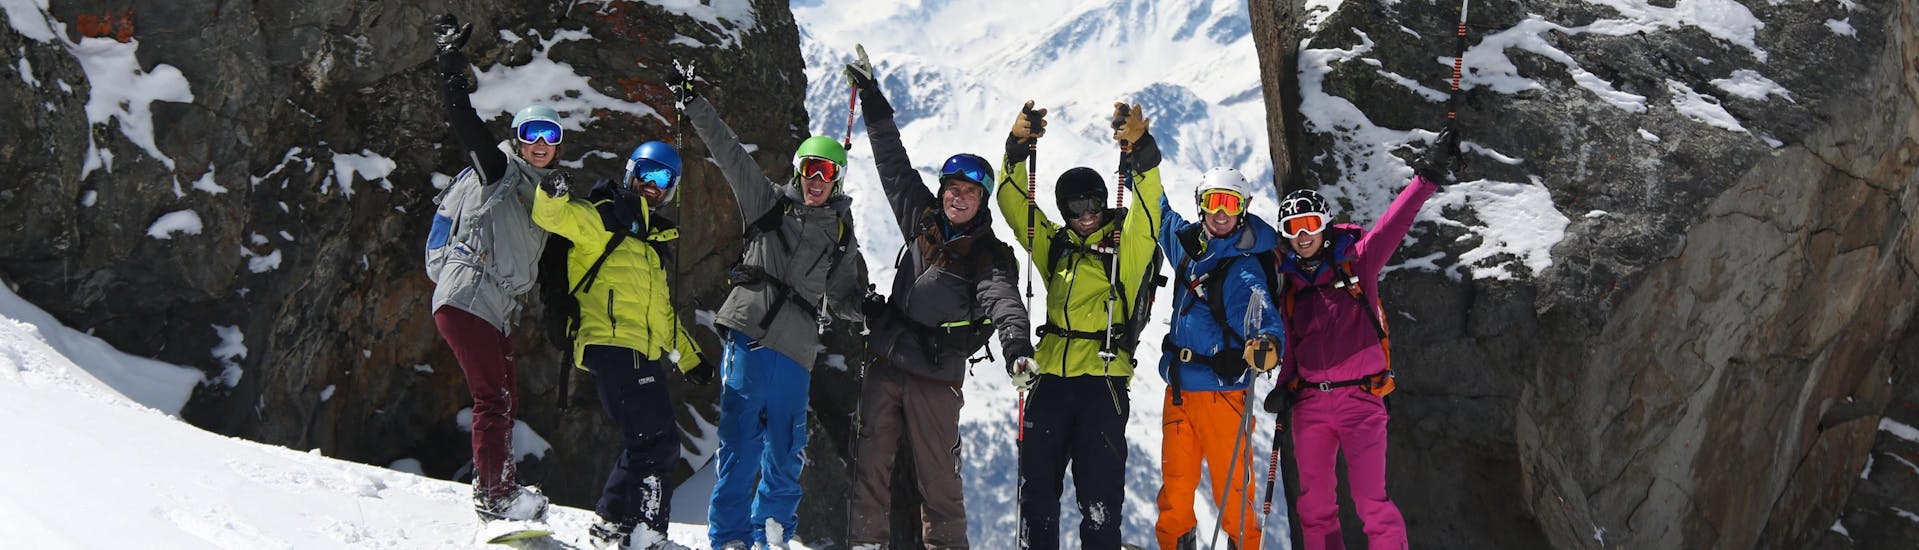 Un snowboardeur s'amuse avec ses amis durant son Cours particulier de snowboard - Haute saison - Tous âges qu'une équipe de moniteurs professionnels de l'école de ski Prosneige Val d'Isère ont préparé en fonction de leurs besoins.